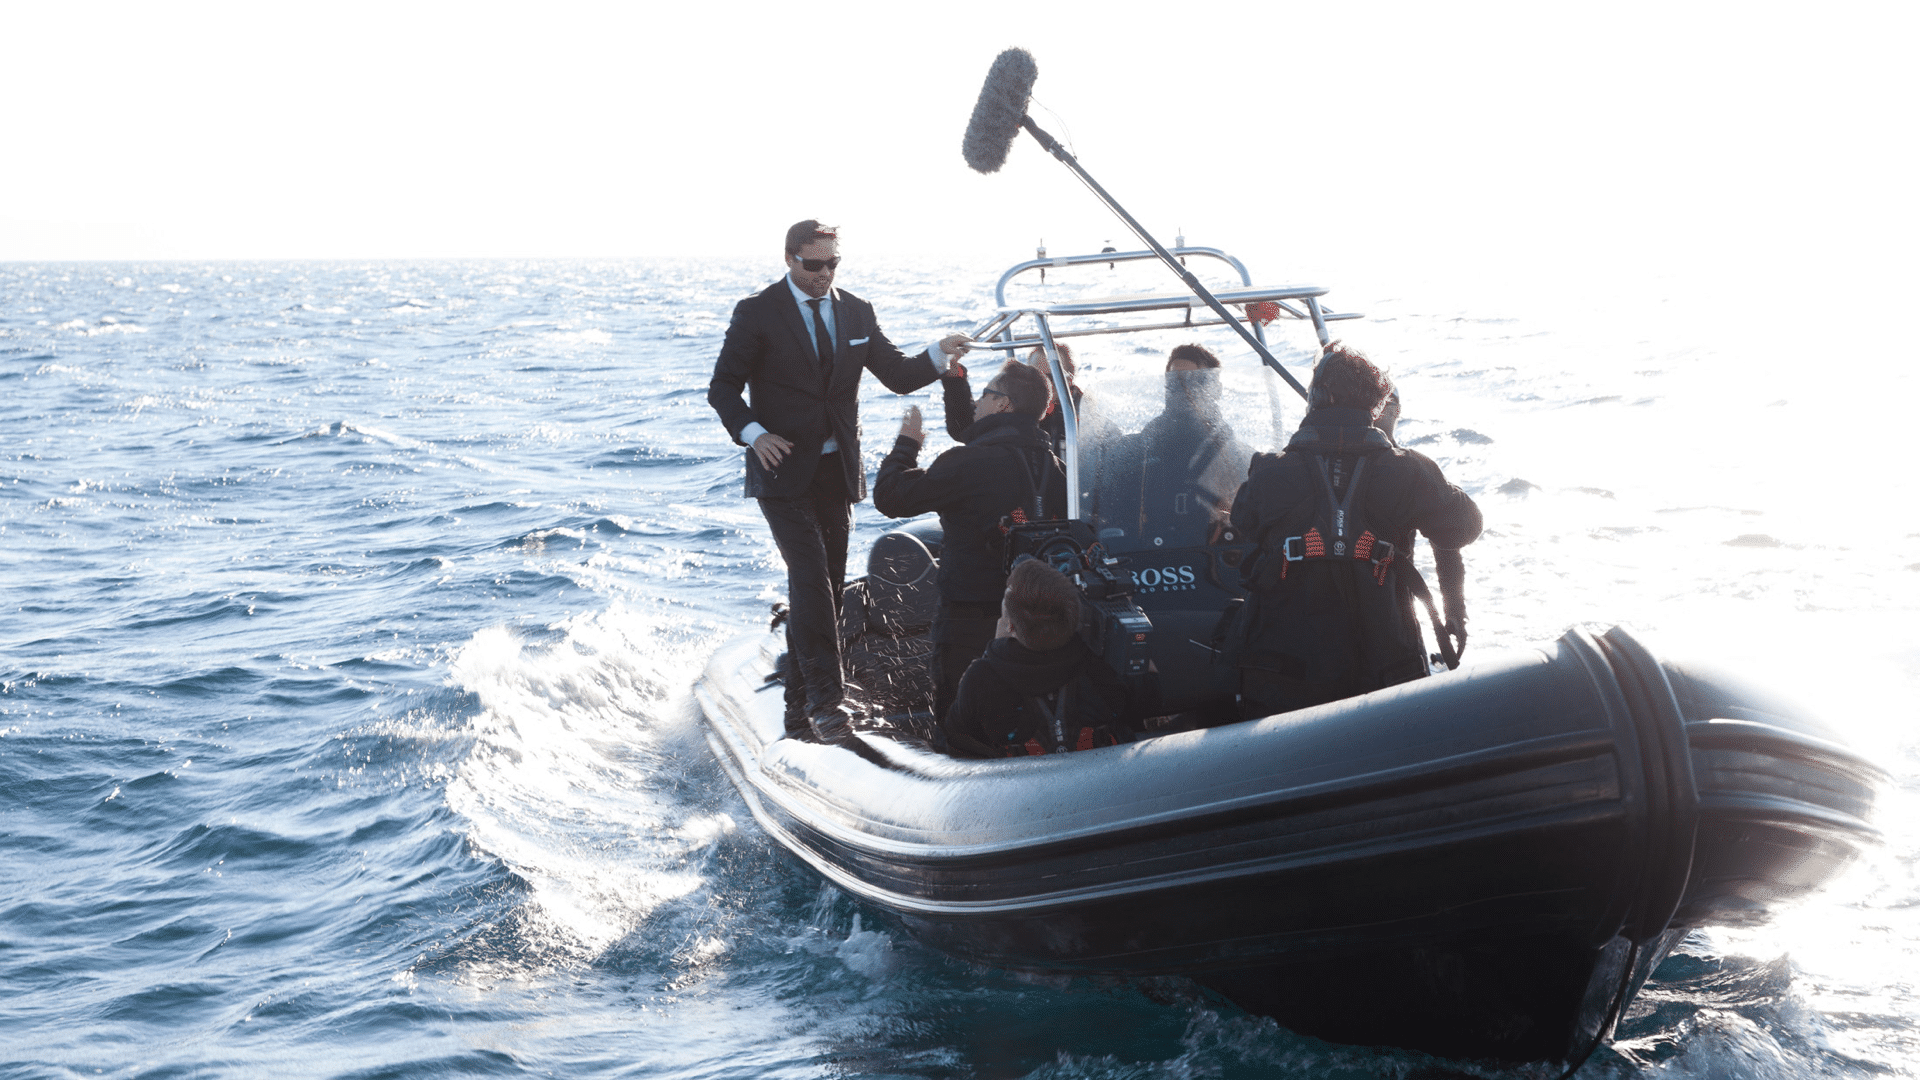 Mann im schwarzen Anzug und Kamerateam auf einem Schlauchboot für die Hugo Boss Social Media Kampagne